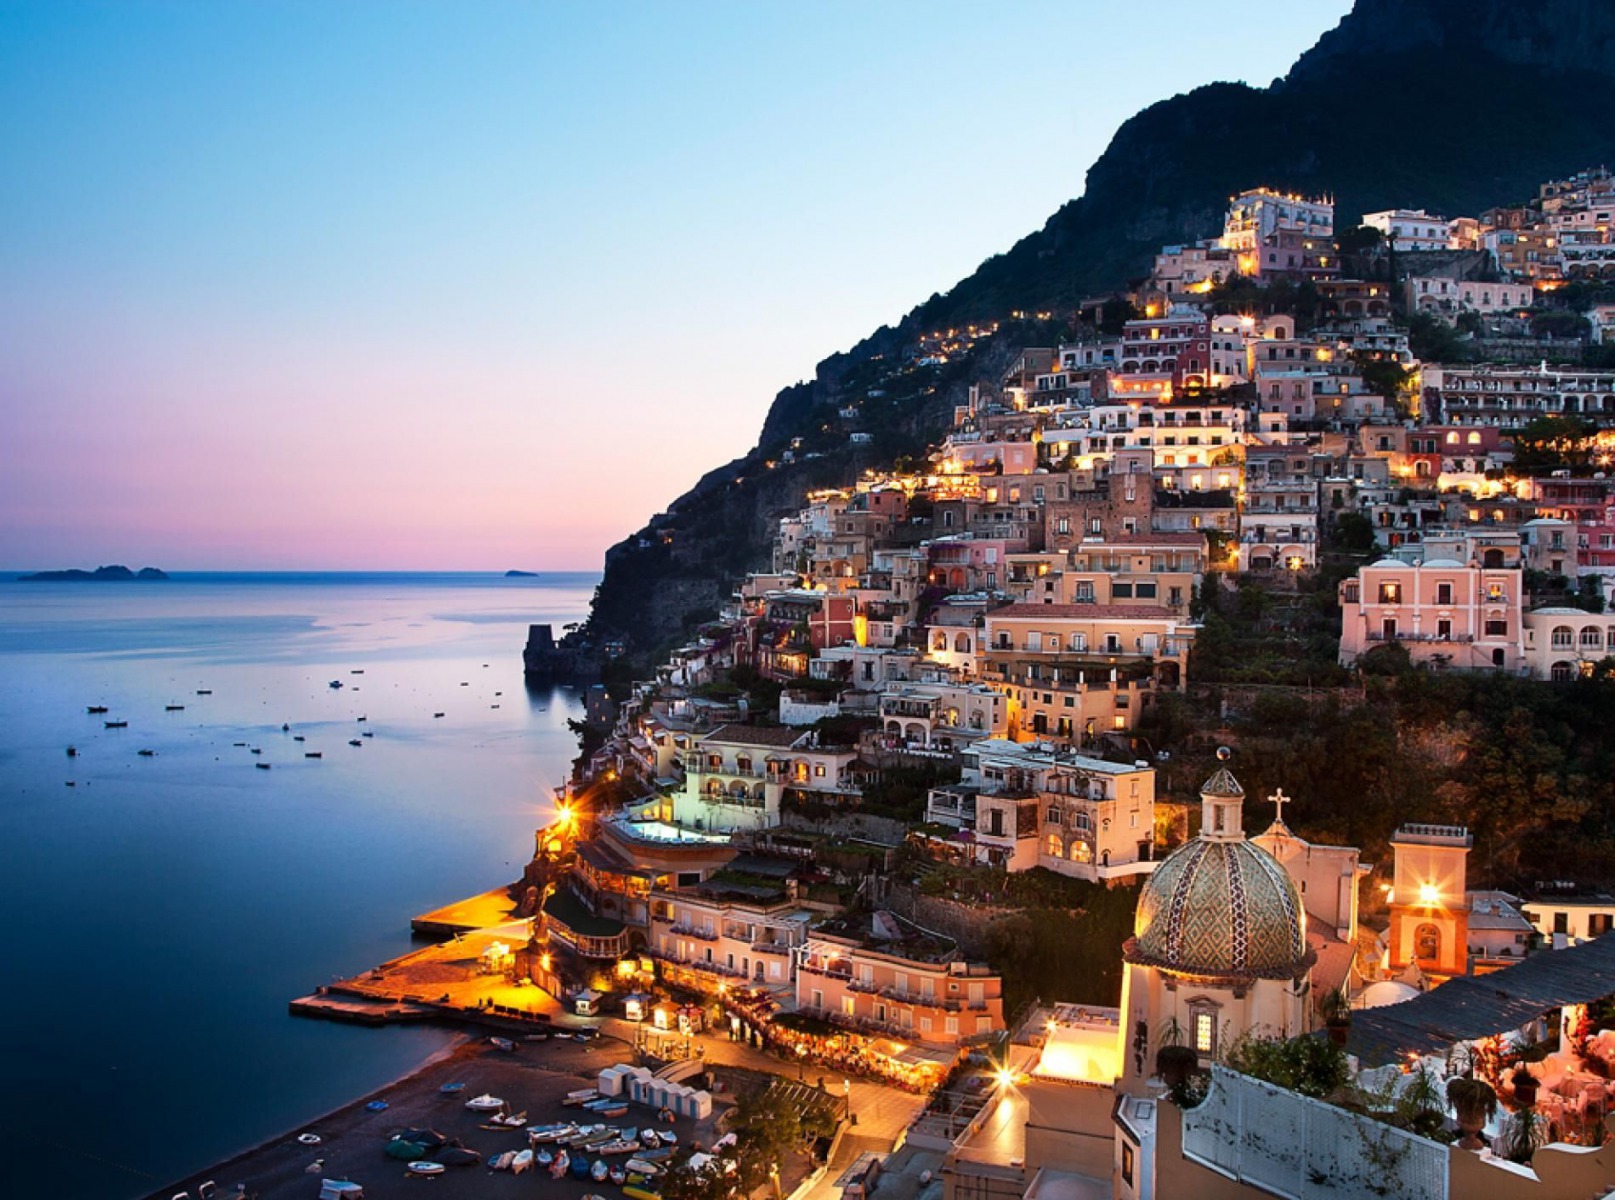 Tour of Positano by night – Amalfi Coast Epic Tours